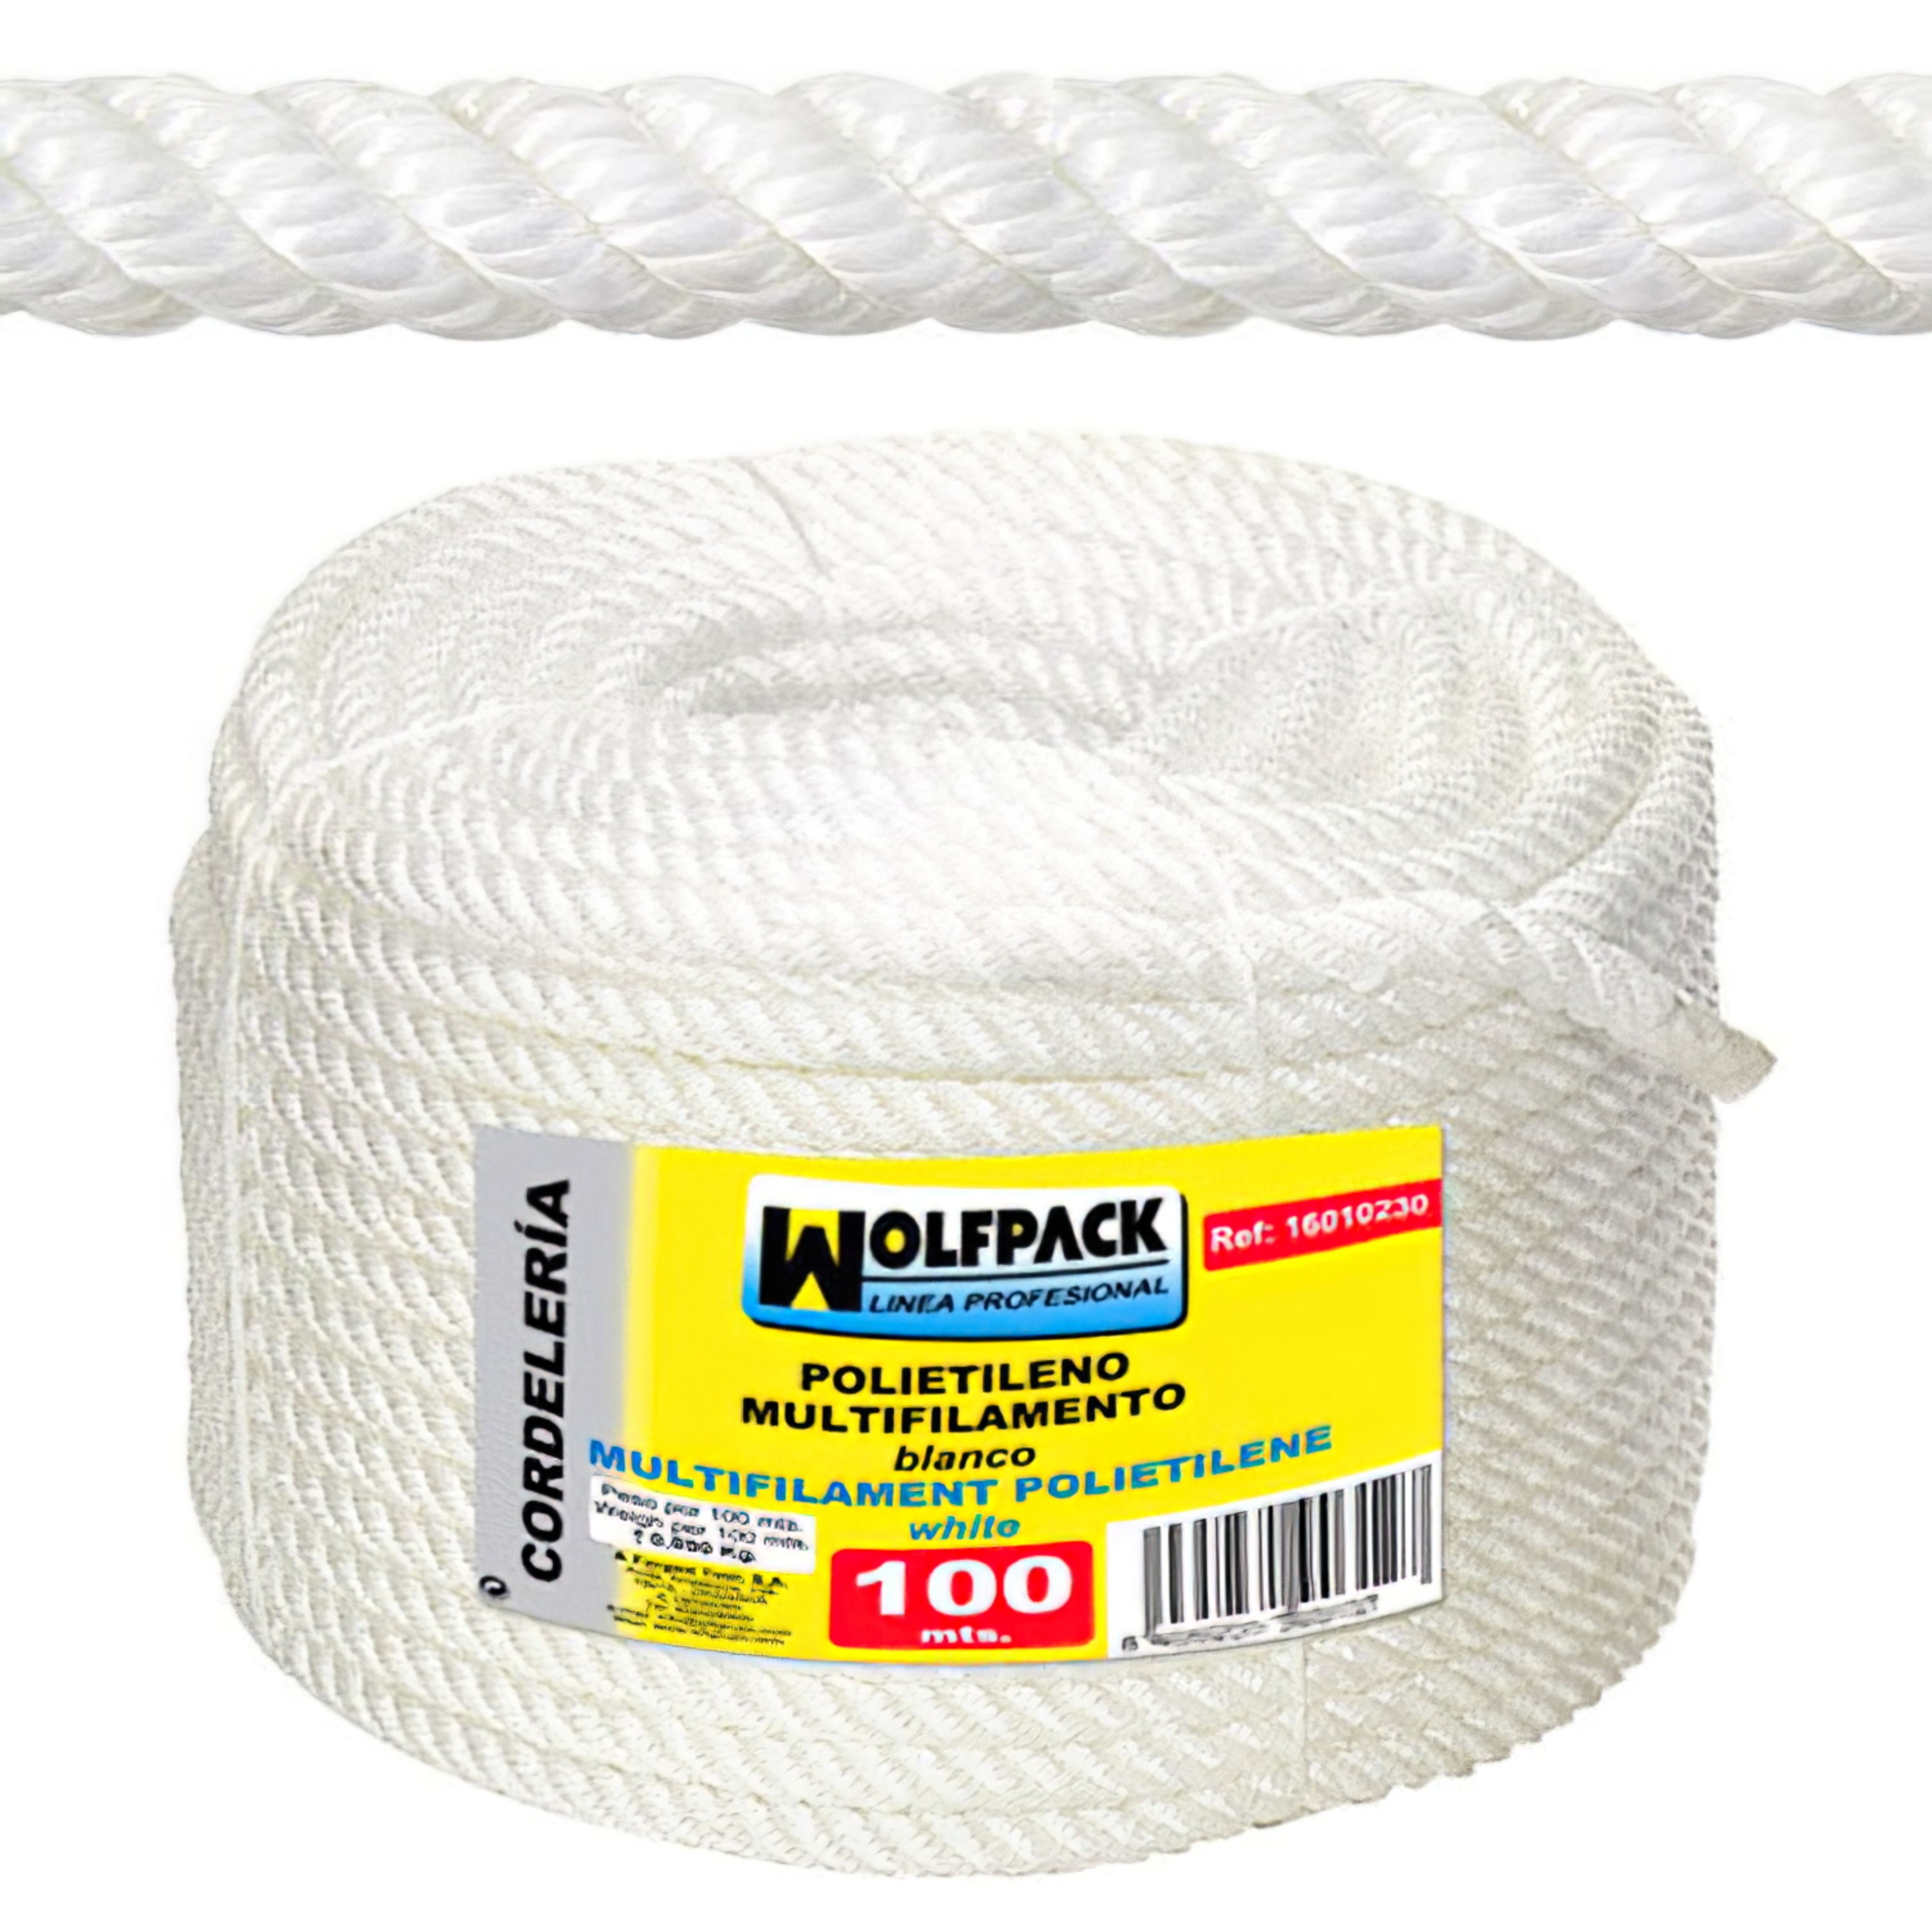 Imagen de Cuerda Polipropileno Multifilamento (Rollo 100 m.)  20 mm.